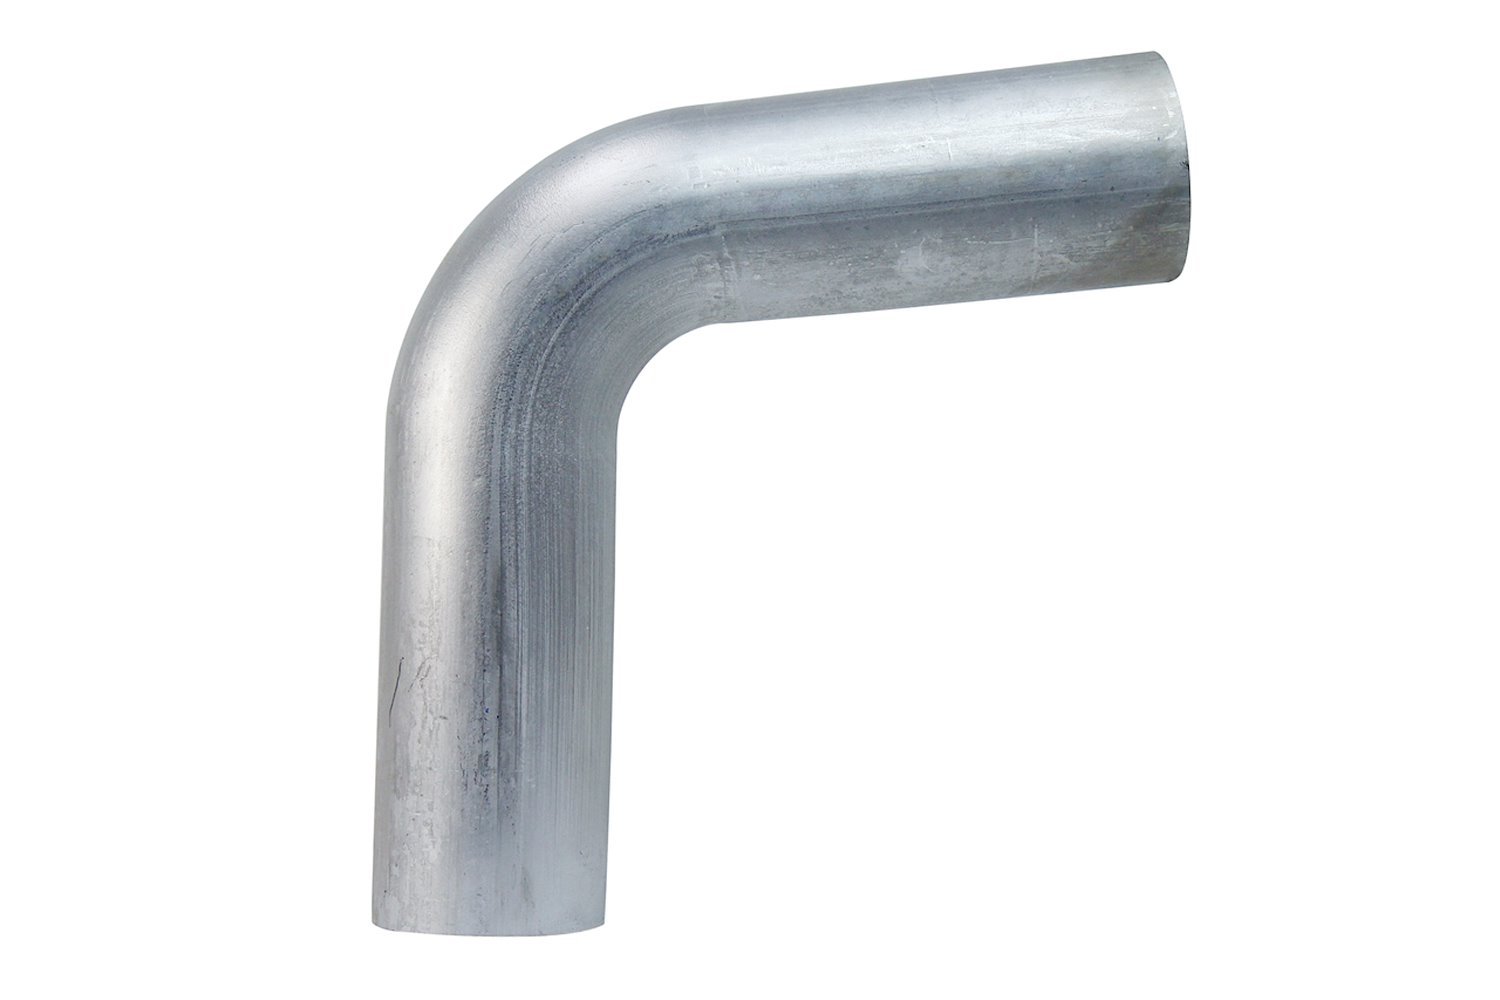 AT80-400-CLR-55 Aluminum Elbow Tube, 6061 Aluminum, 80-Degree Bend Elbow Tubing, 4 in. OD, Large Radius, 5-1/2 in. CLR